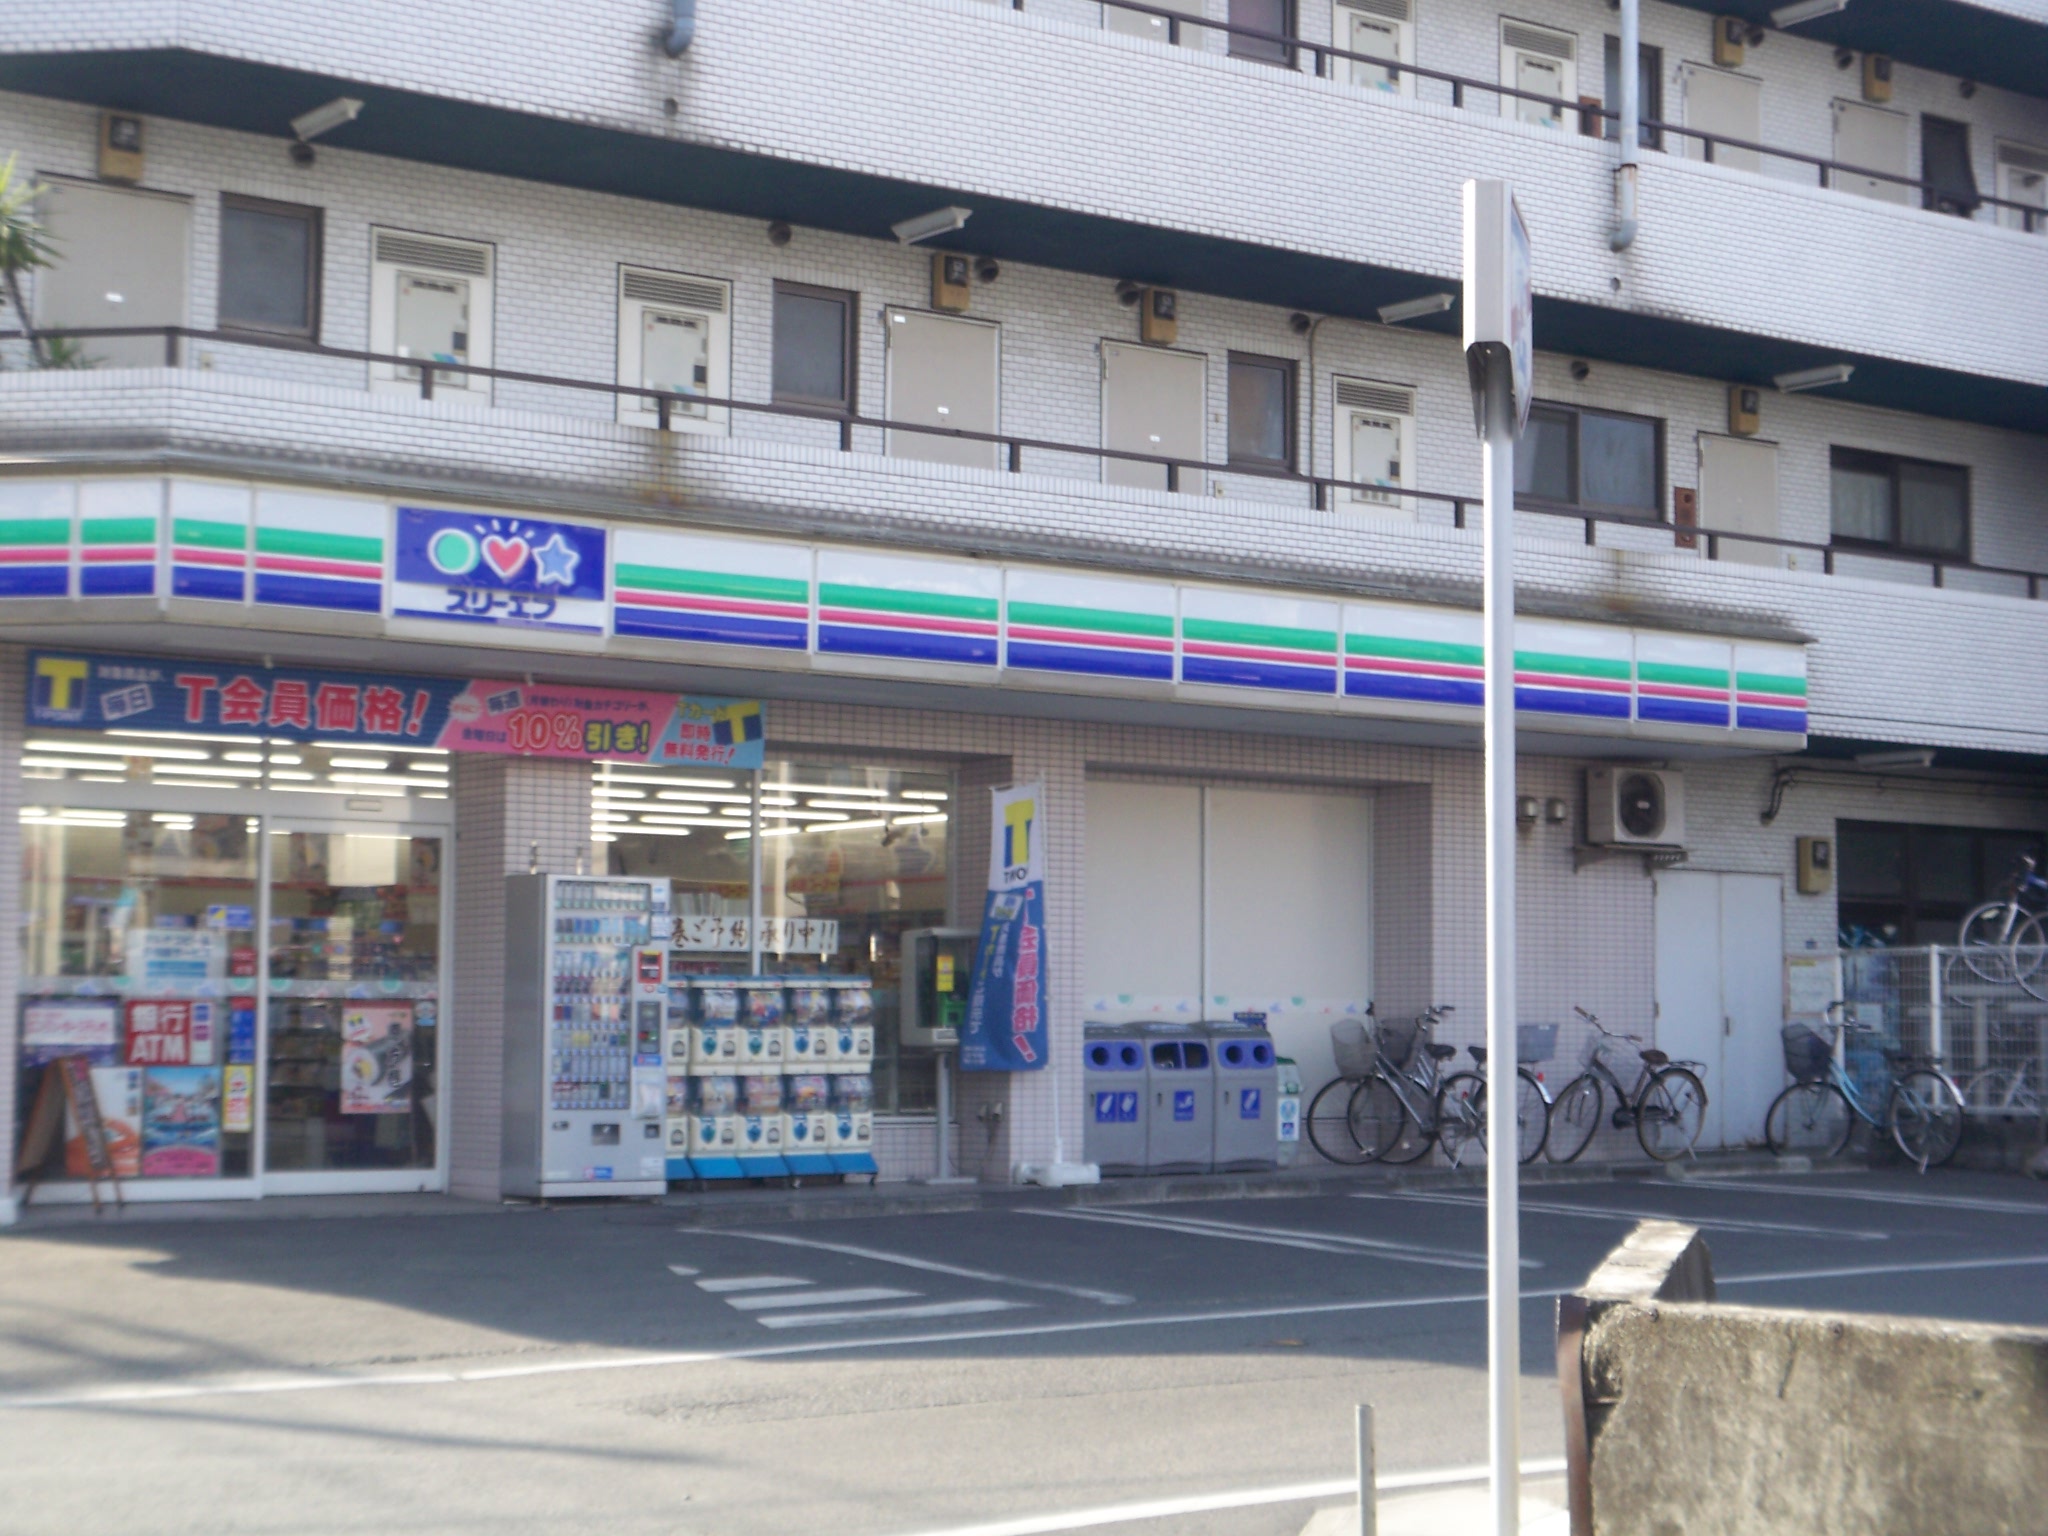 Convenience store. Three F Kawasaki Nakano Island 3-chome up (convenience store) 366m